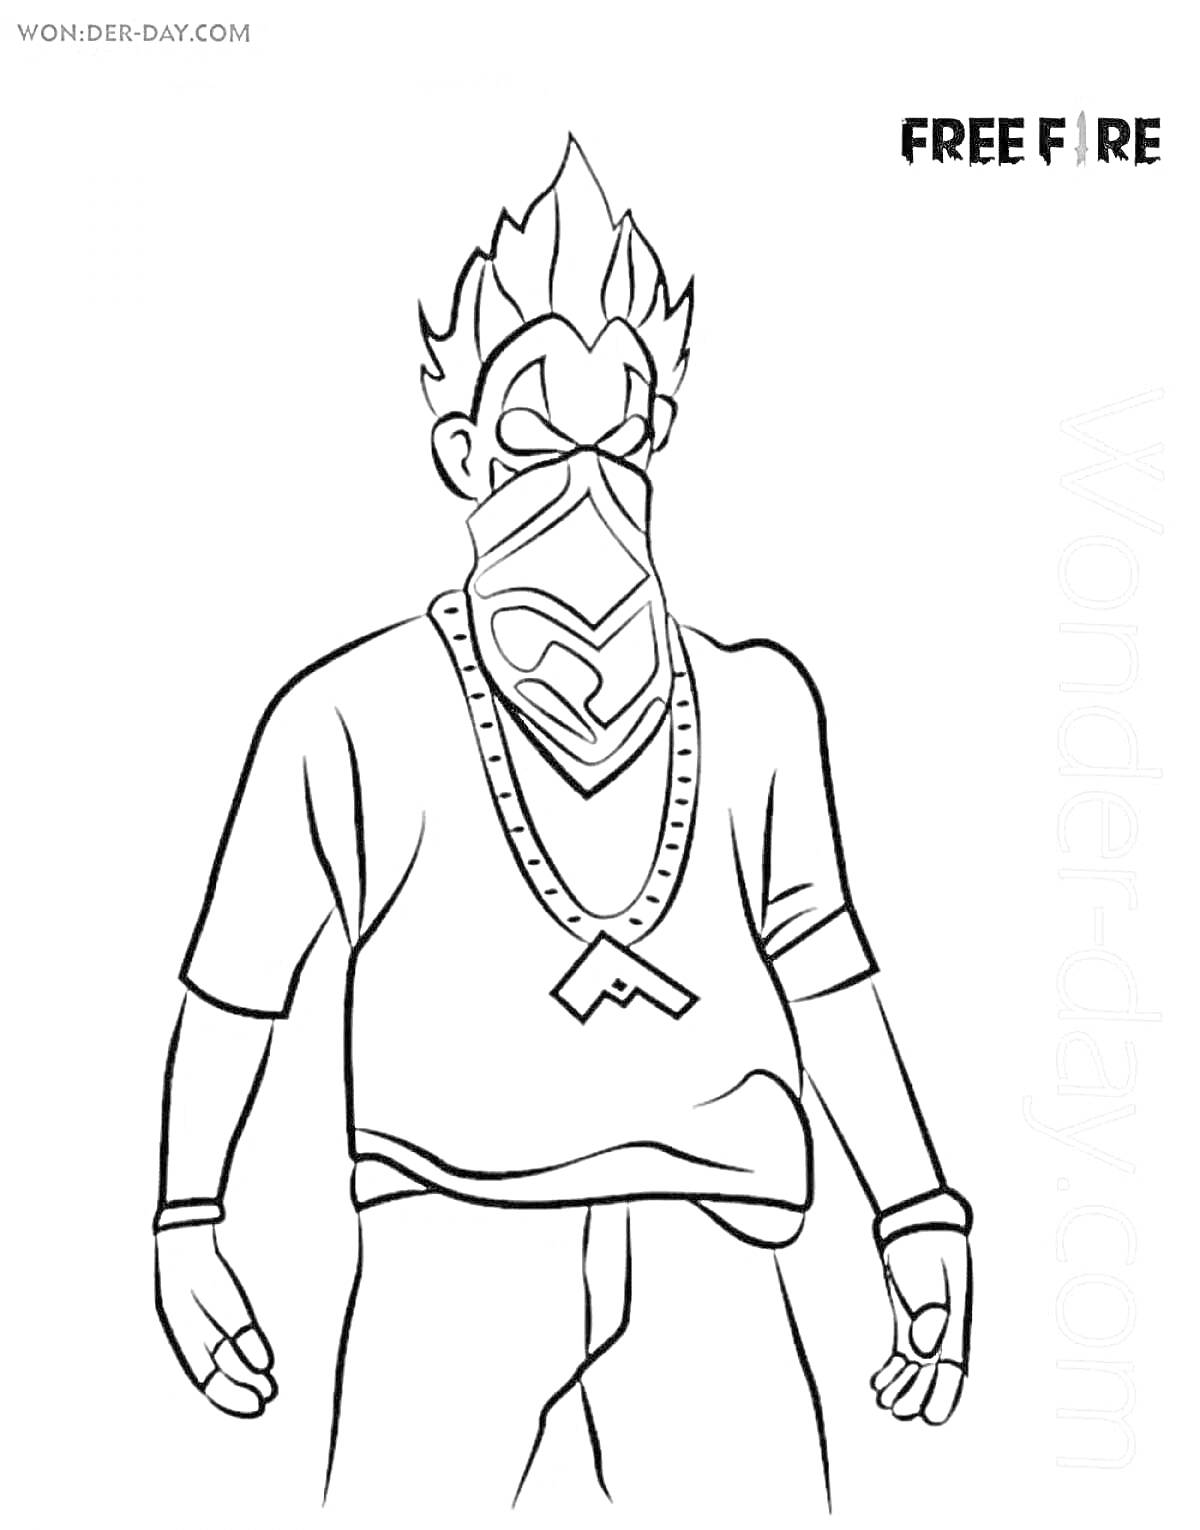 Раскраска Персонаж в маске из игры Free Fire с причёской, в длинном оверсайз топе и с ожерельем на шее